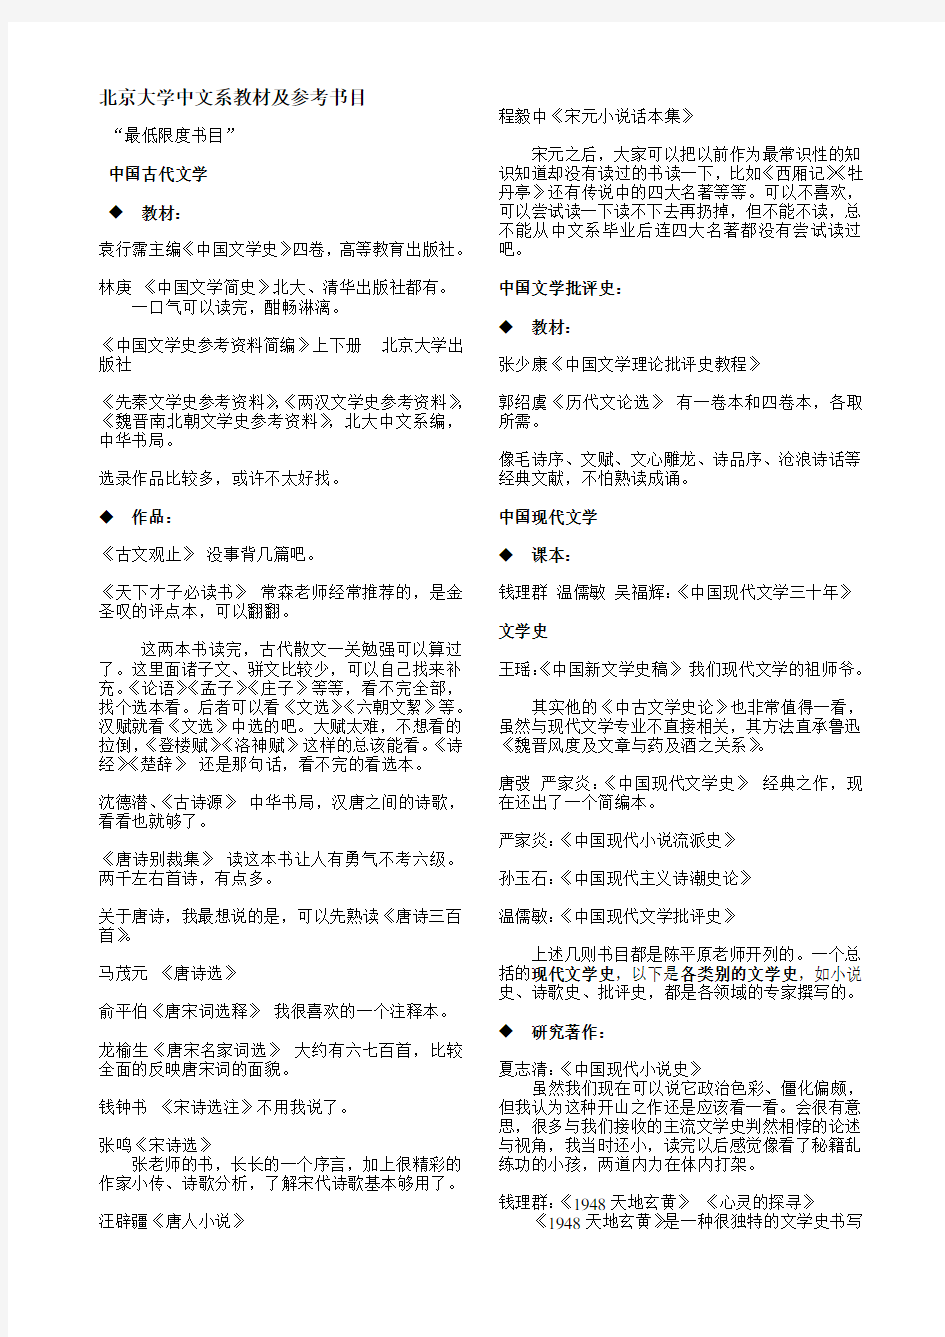 北京大学中系课程、教材及参考书目(整理版)